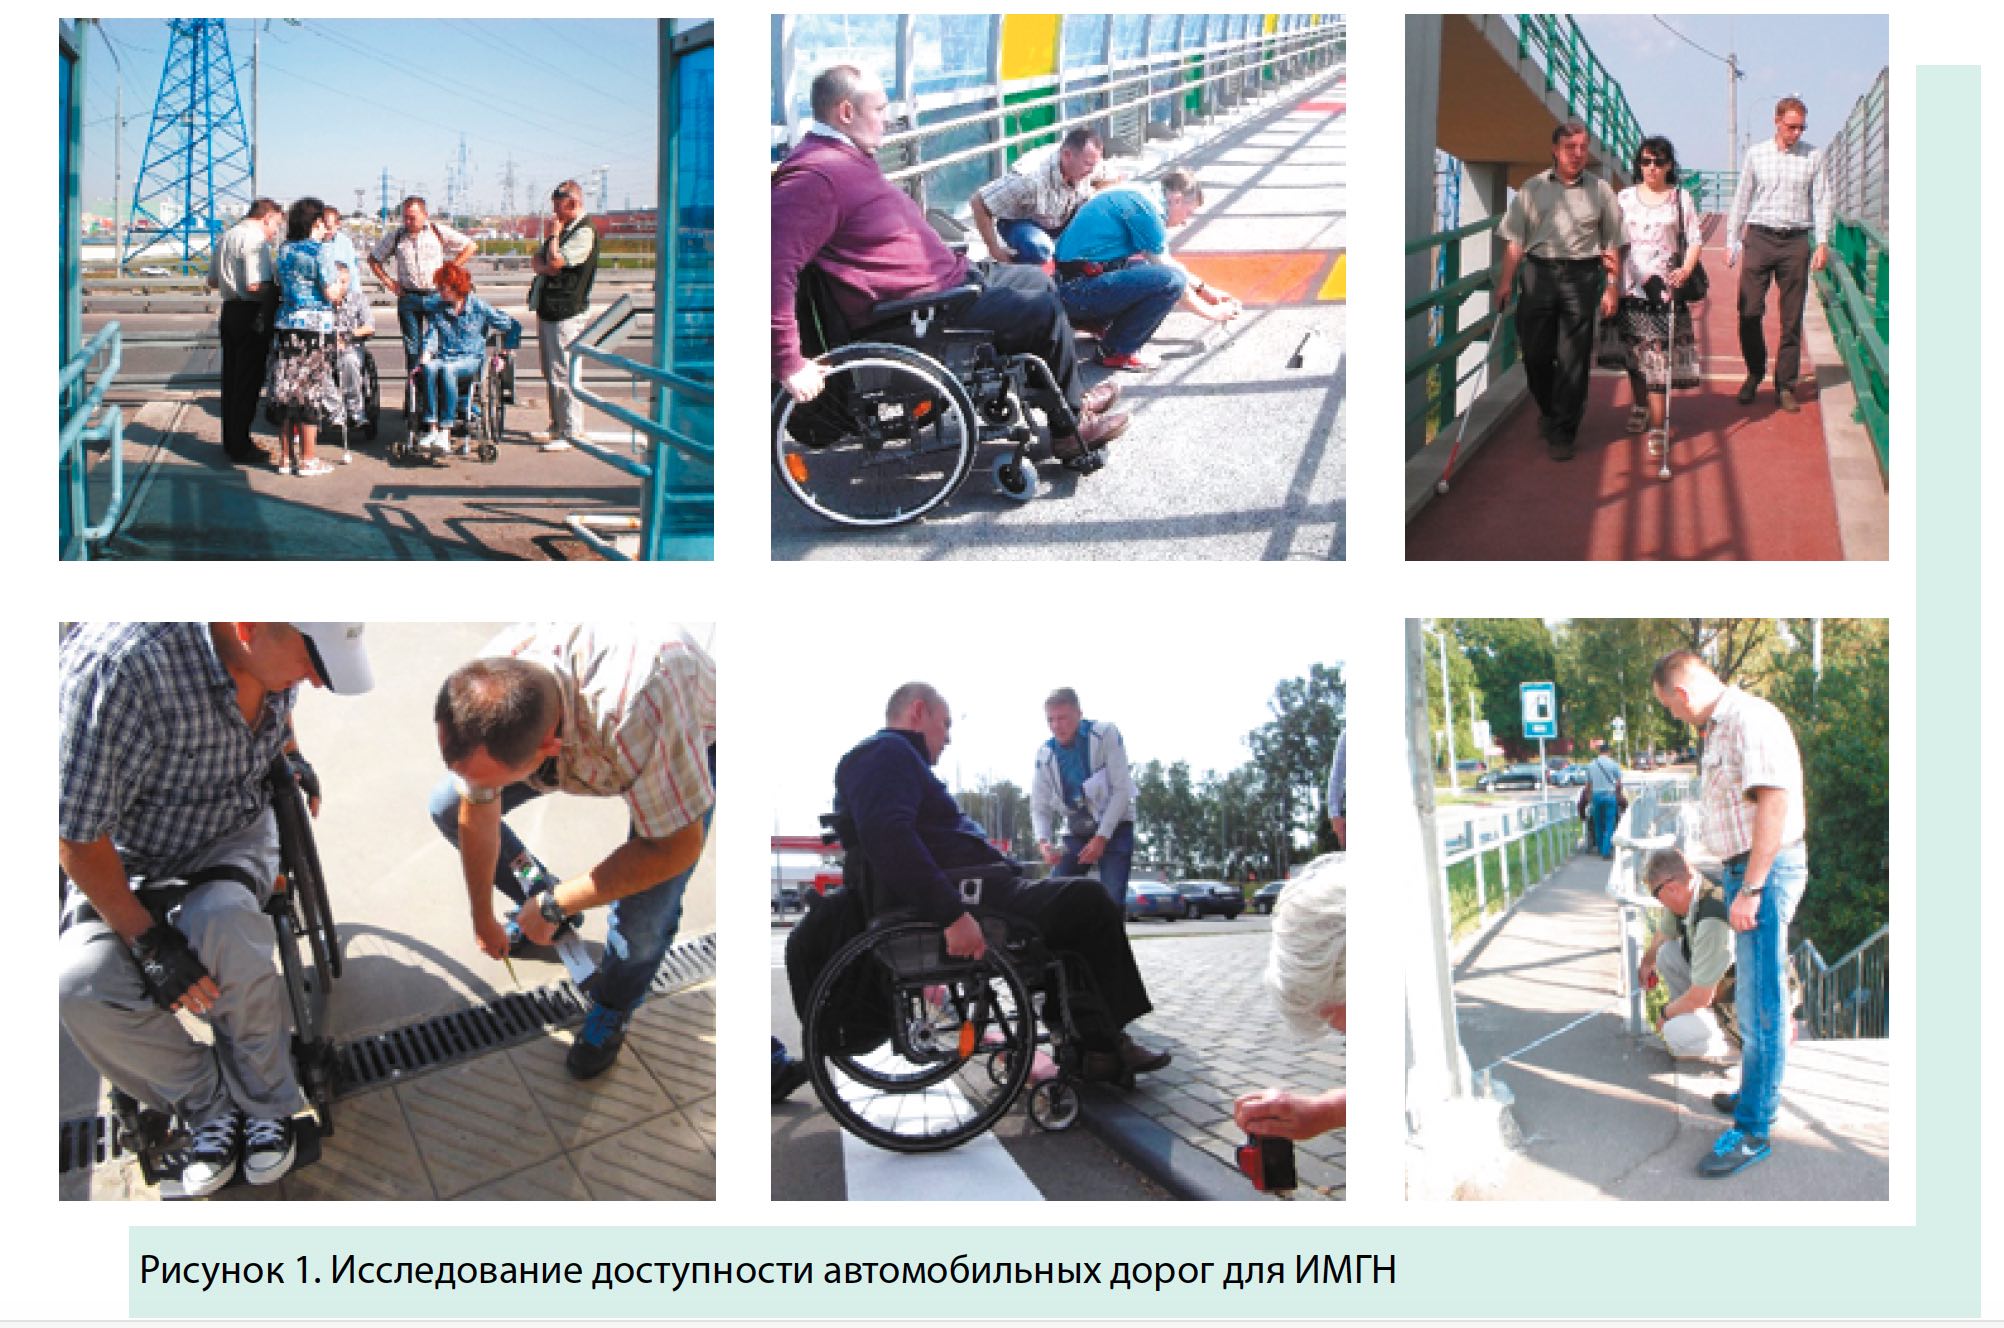 Лица с ограниченными возможностями жизнедеятельности. Безбарьерная среда для инвалидов колясочников в Берлине. Инфраструктура для инвалидов. Маломобильные группы населения. Транспорт для инвалидов.